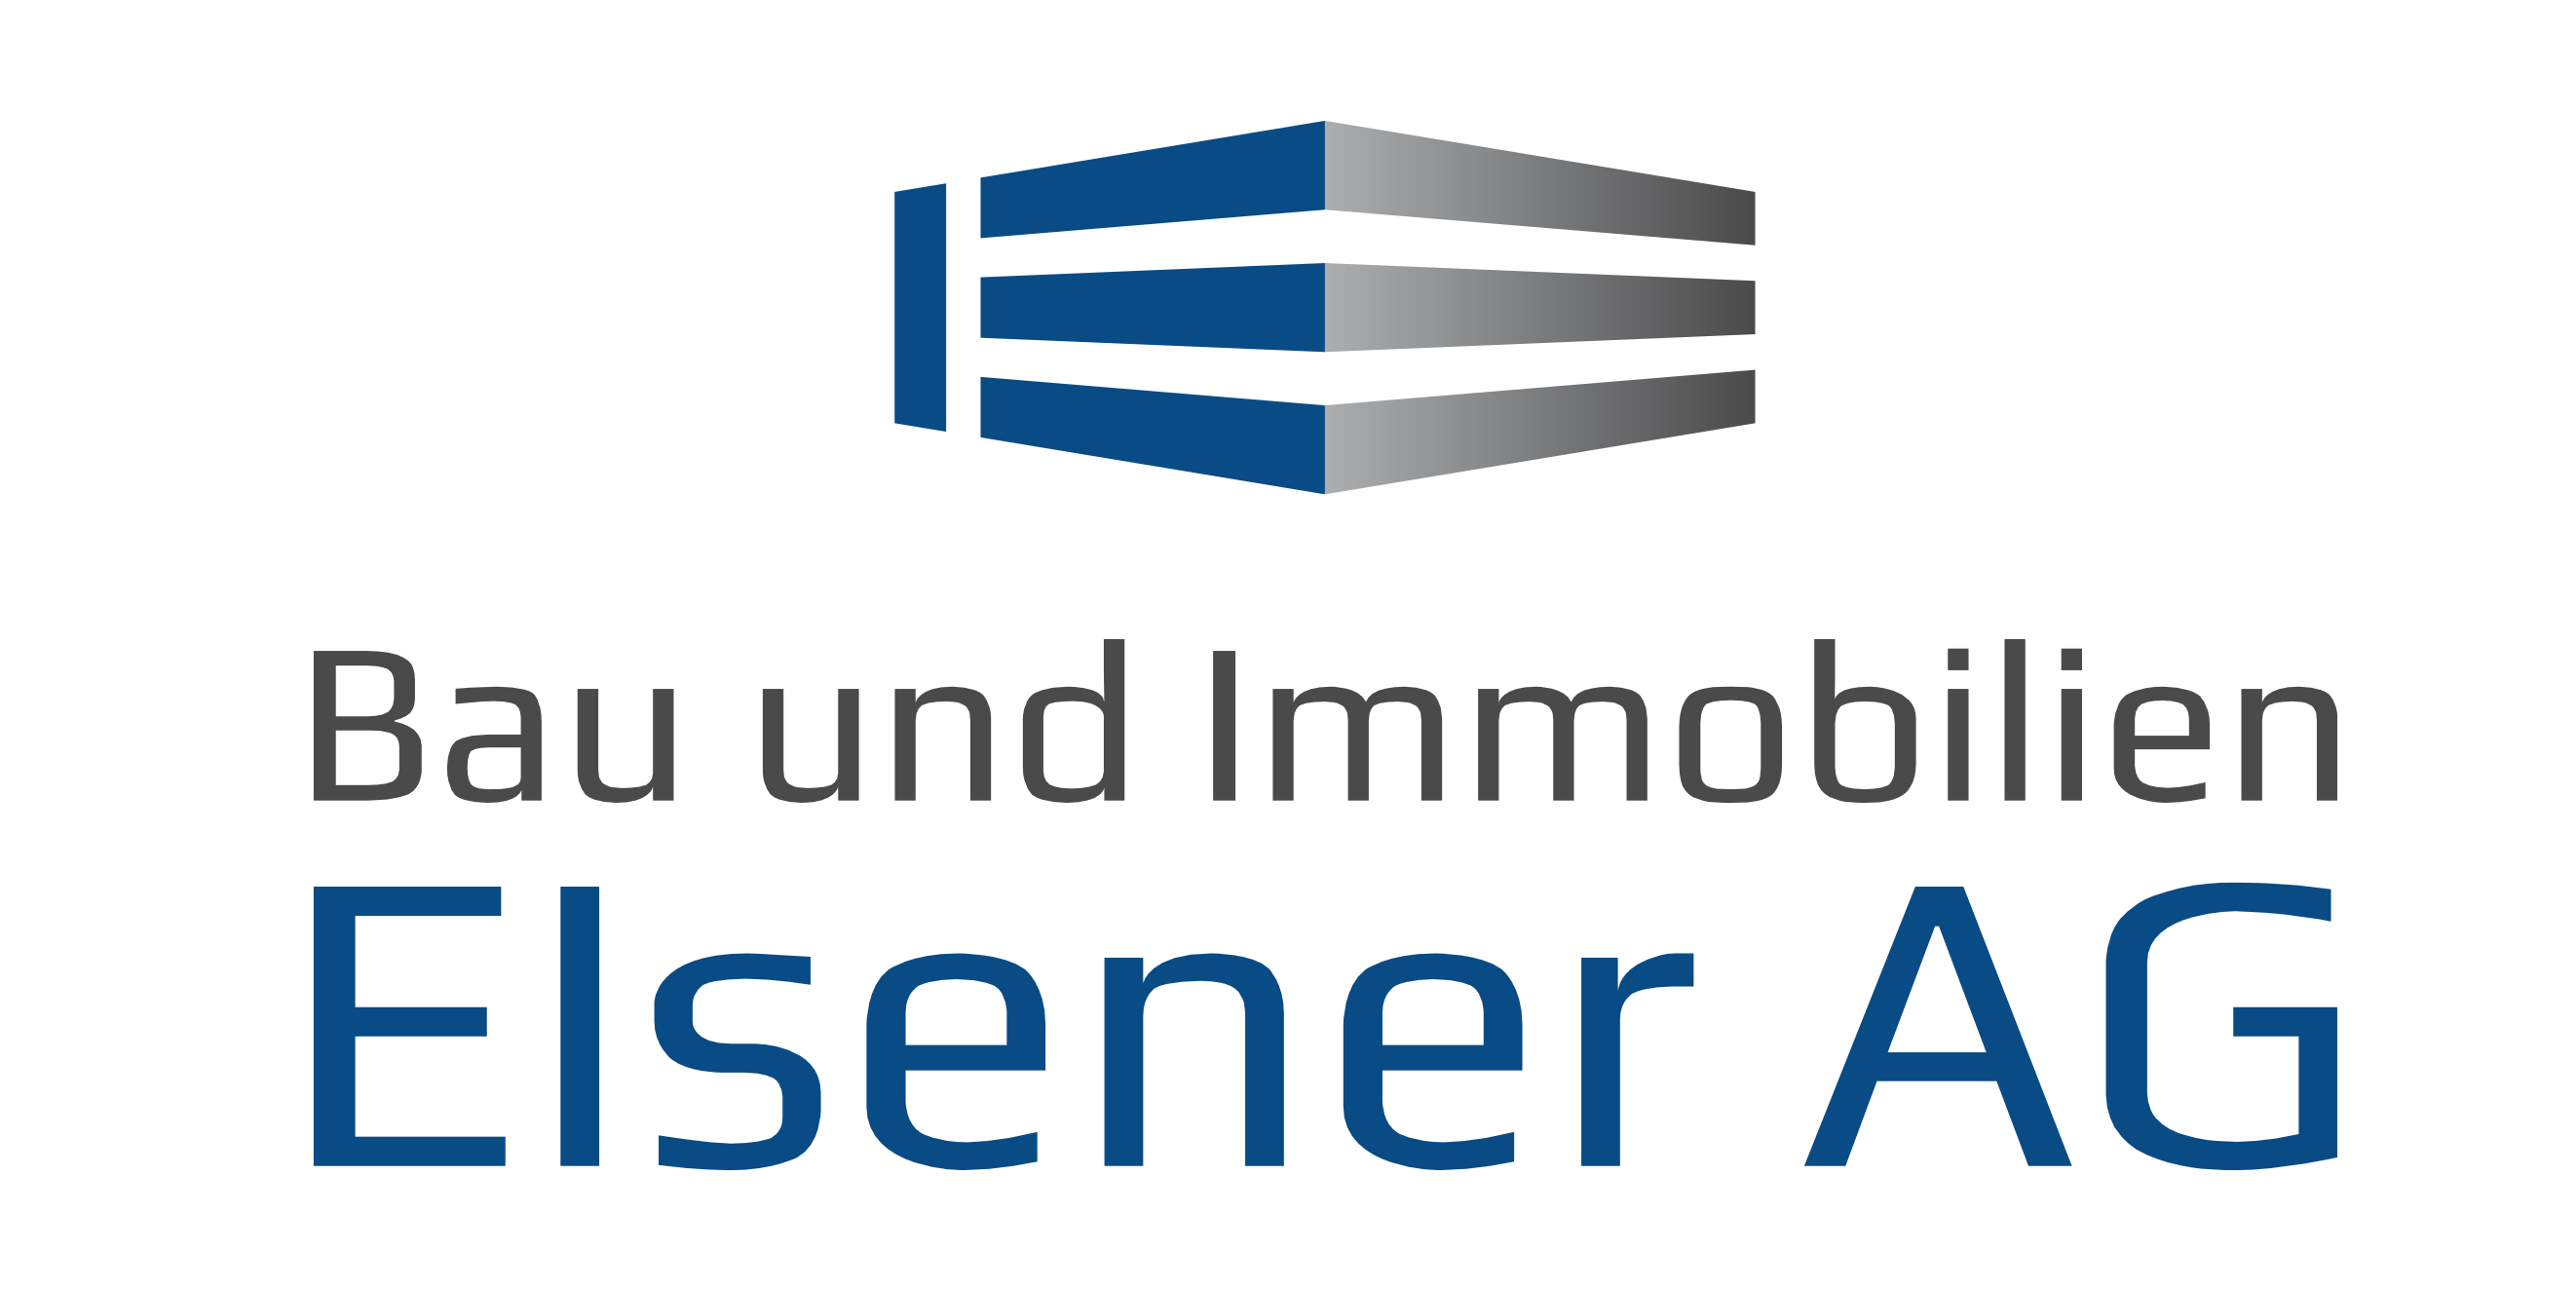 Logo Elsener AG